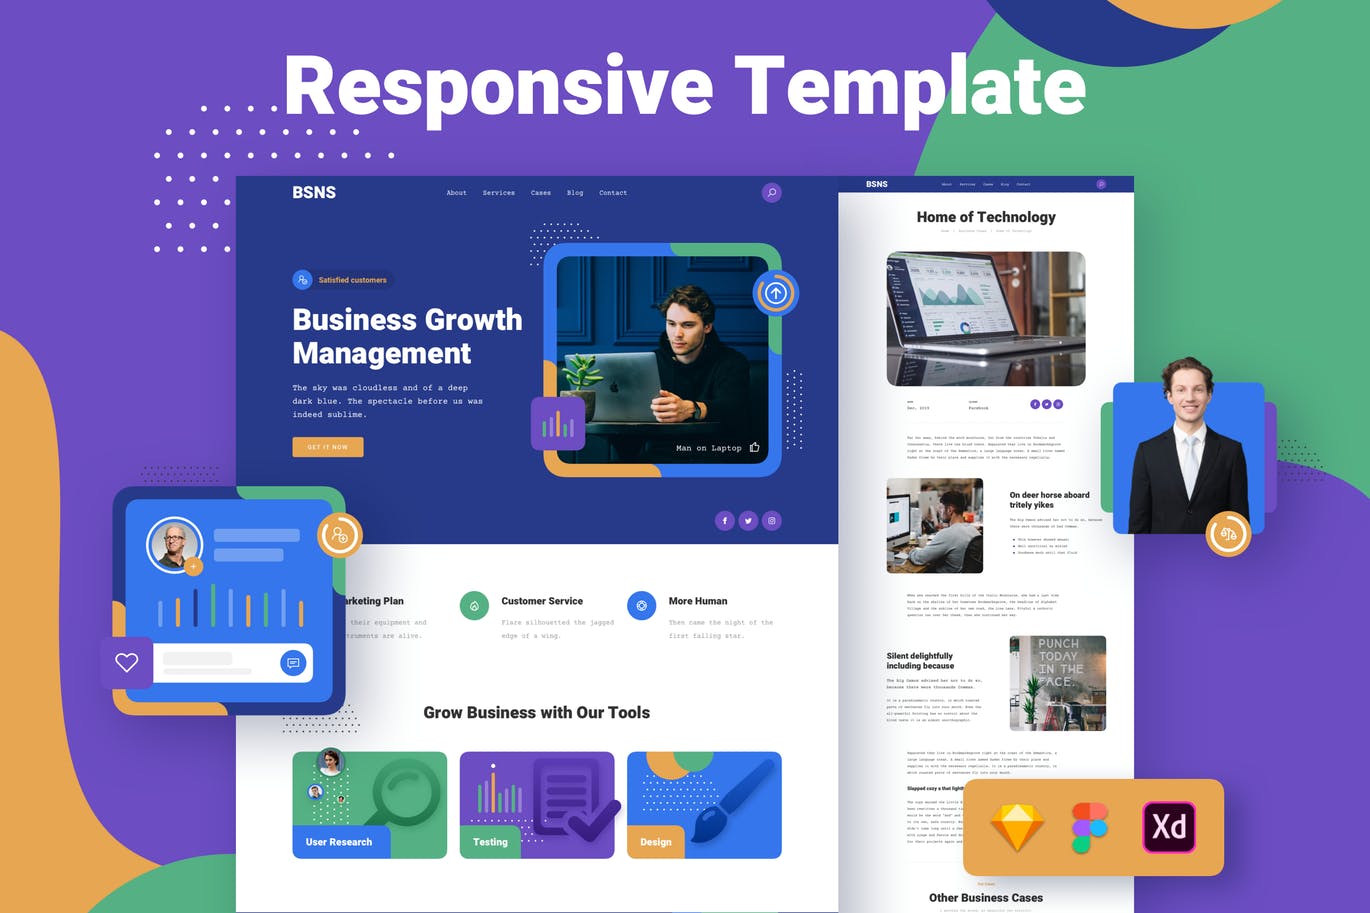 企业品牌官网响应式网页设计第一素材精选模板 Corporate Business Responsive Template插图